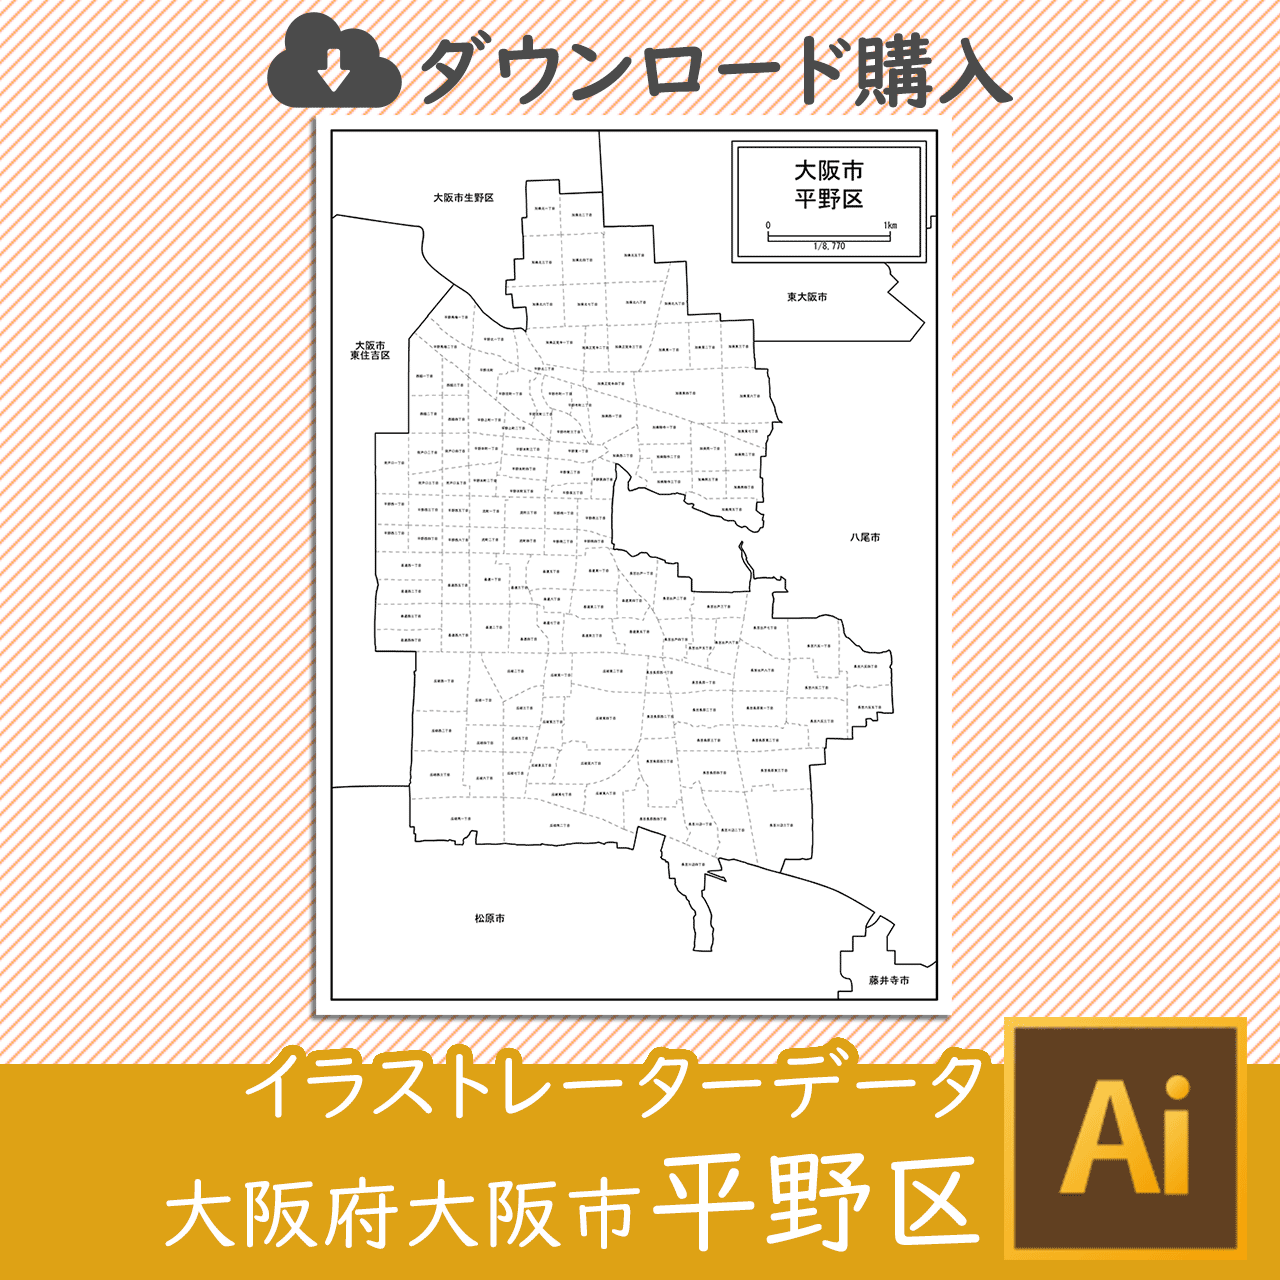 大阪市平野区のaiデータのサムネイル画像